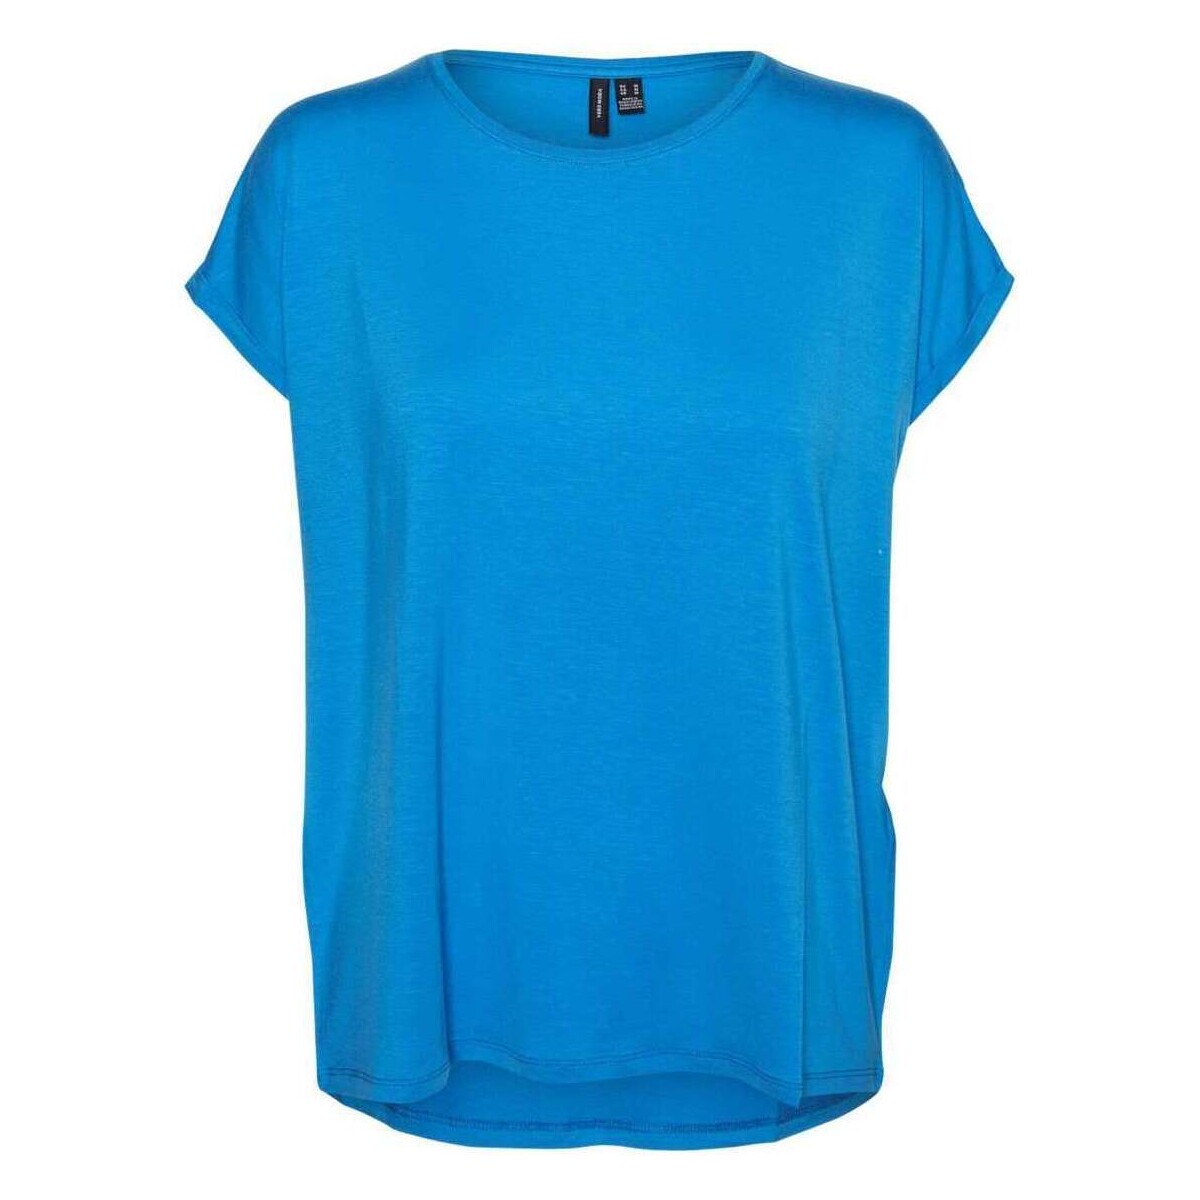 Vêtements Femme T-shirts manches courtes Vero Moda 160585VTPE24 Bleu